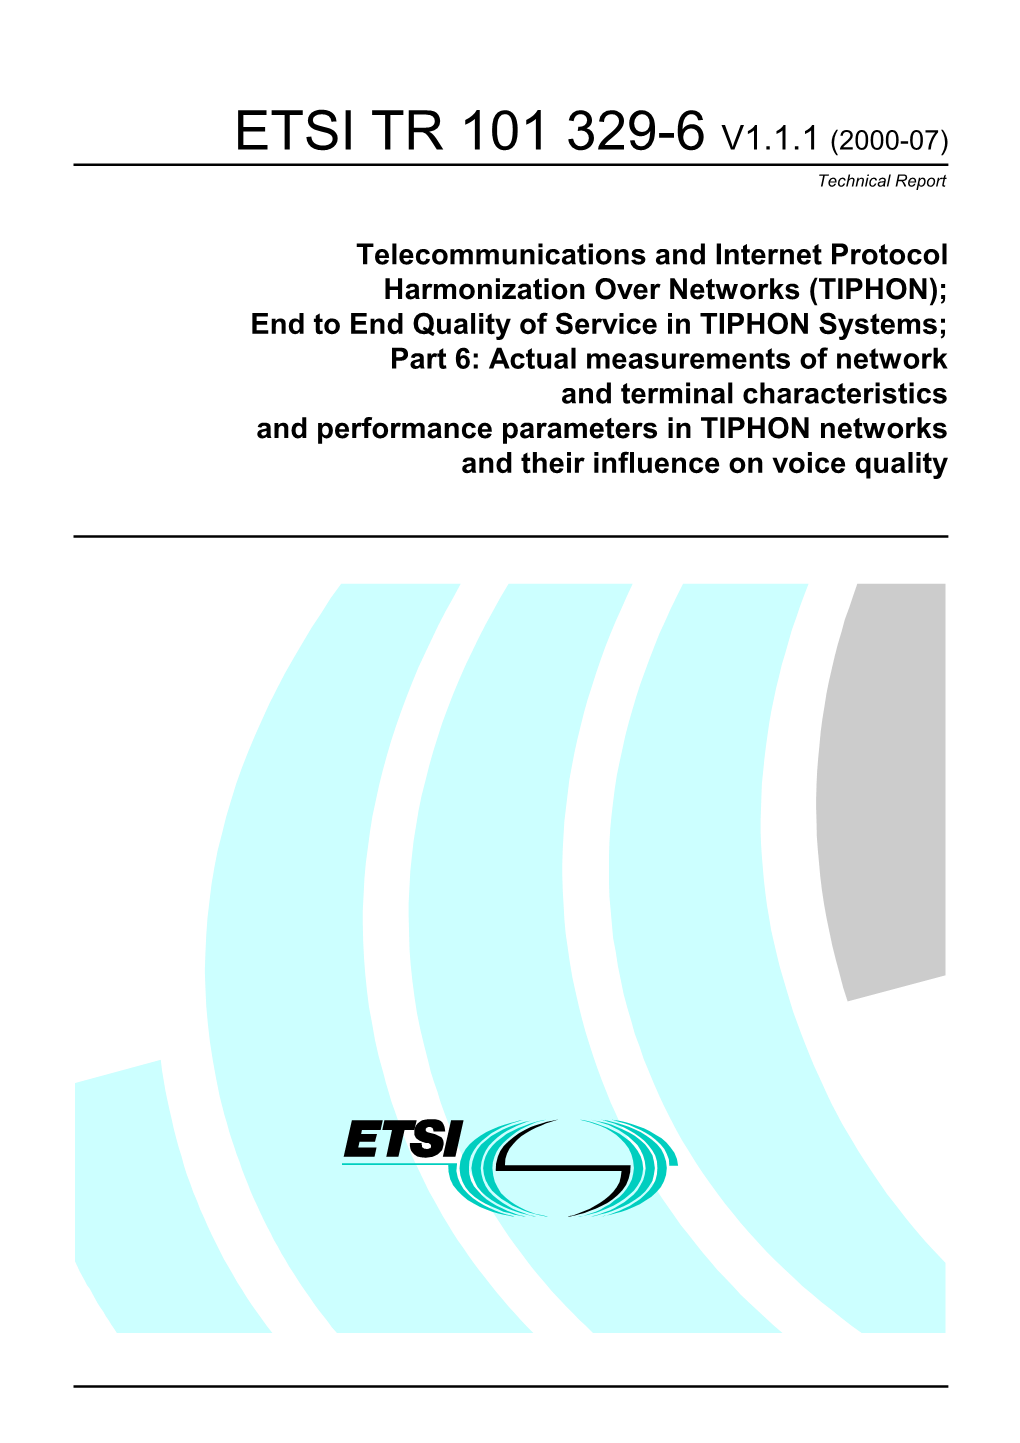 ETSI TR 101 329-6 V1.1.1 (2000-07) Technical Report